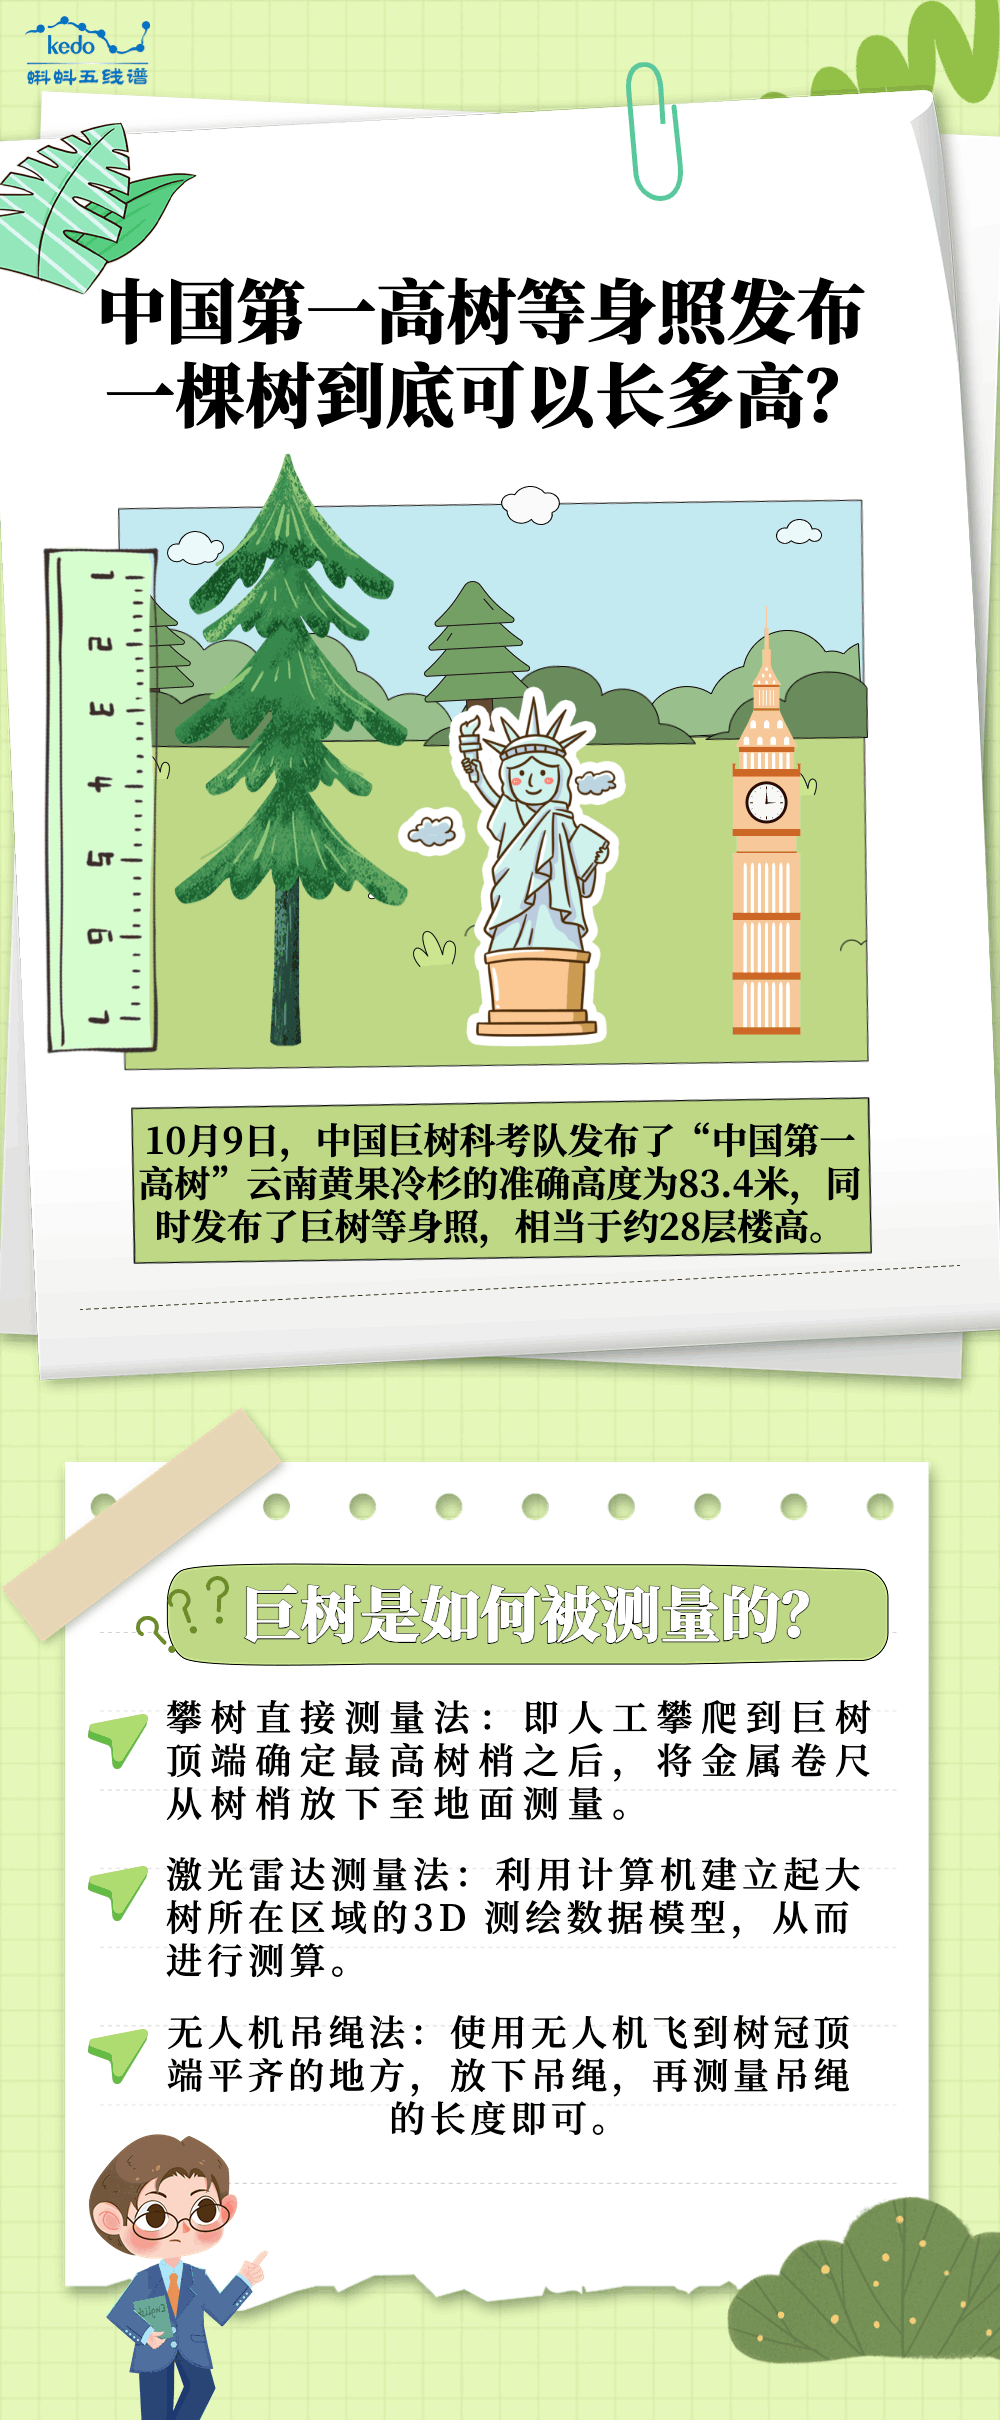 长图 | 中国第一高树等身照发布 一棵树到底可以长多高？